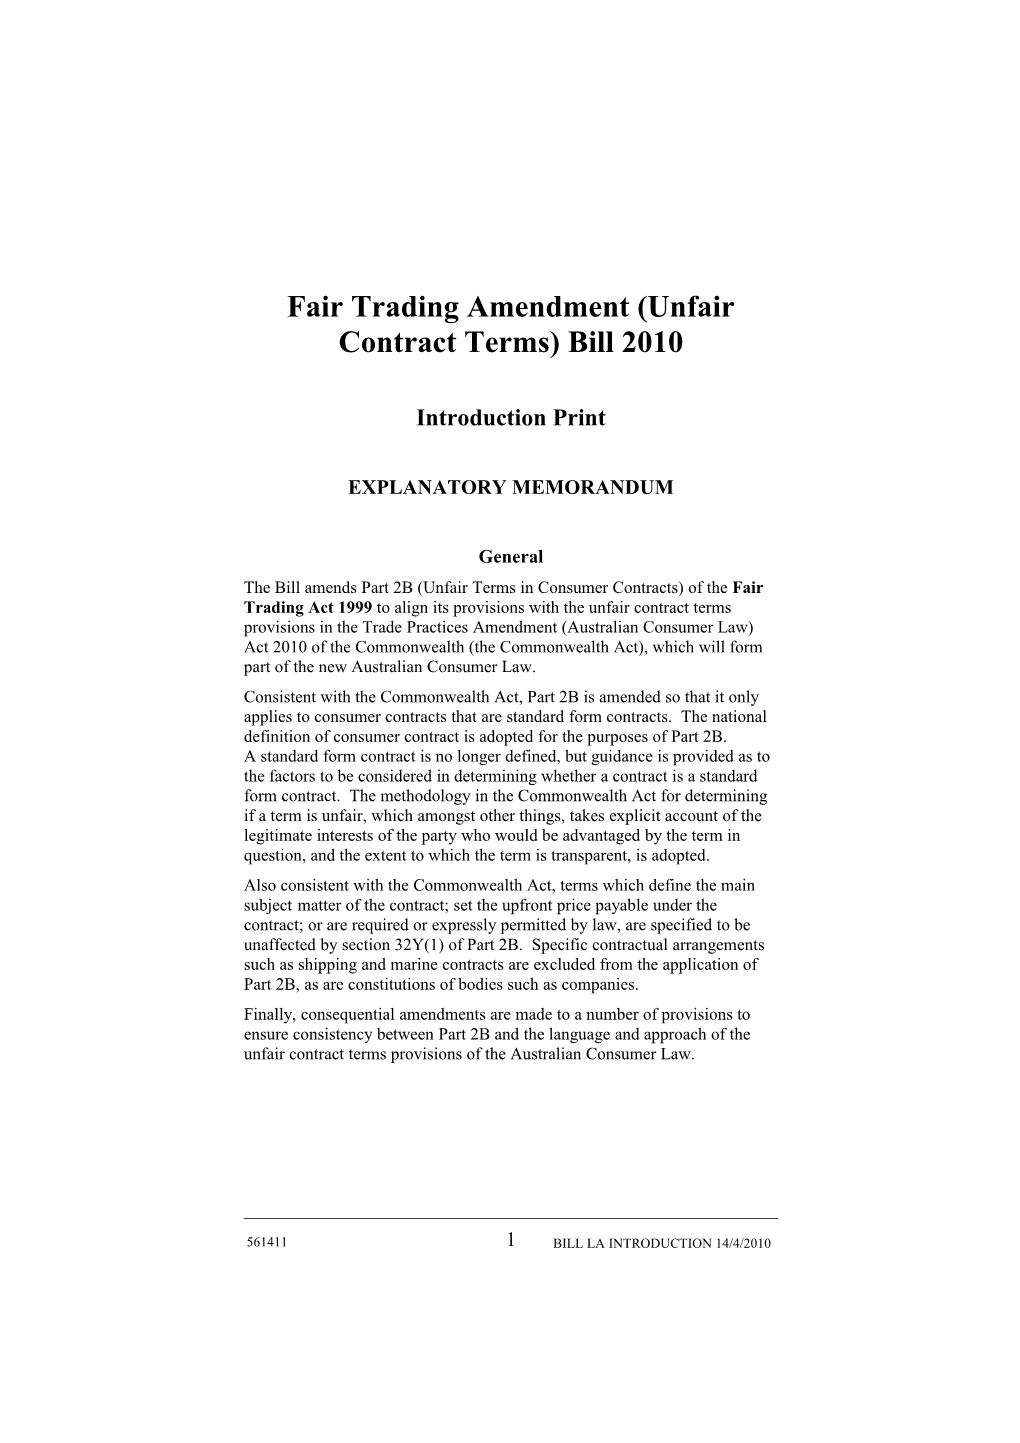 Fair Trading Amendment (Unfair Contract Terms) Bill 2010